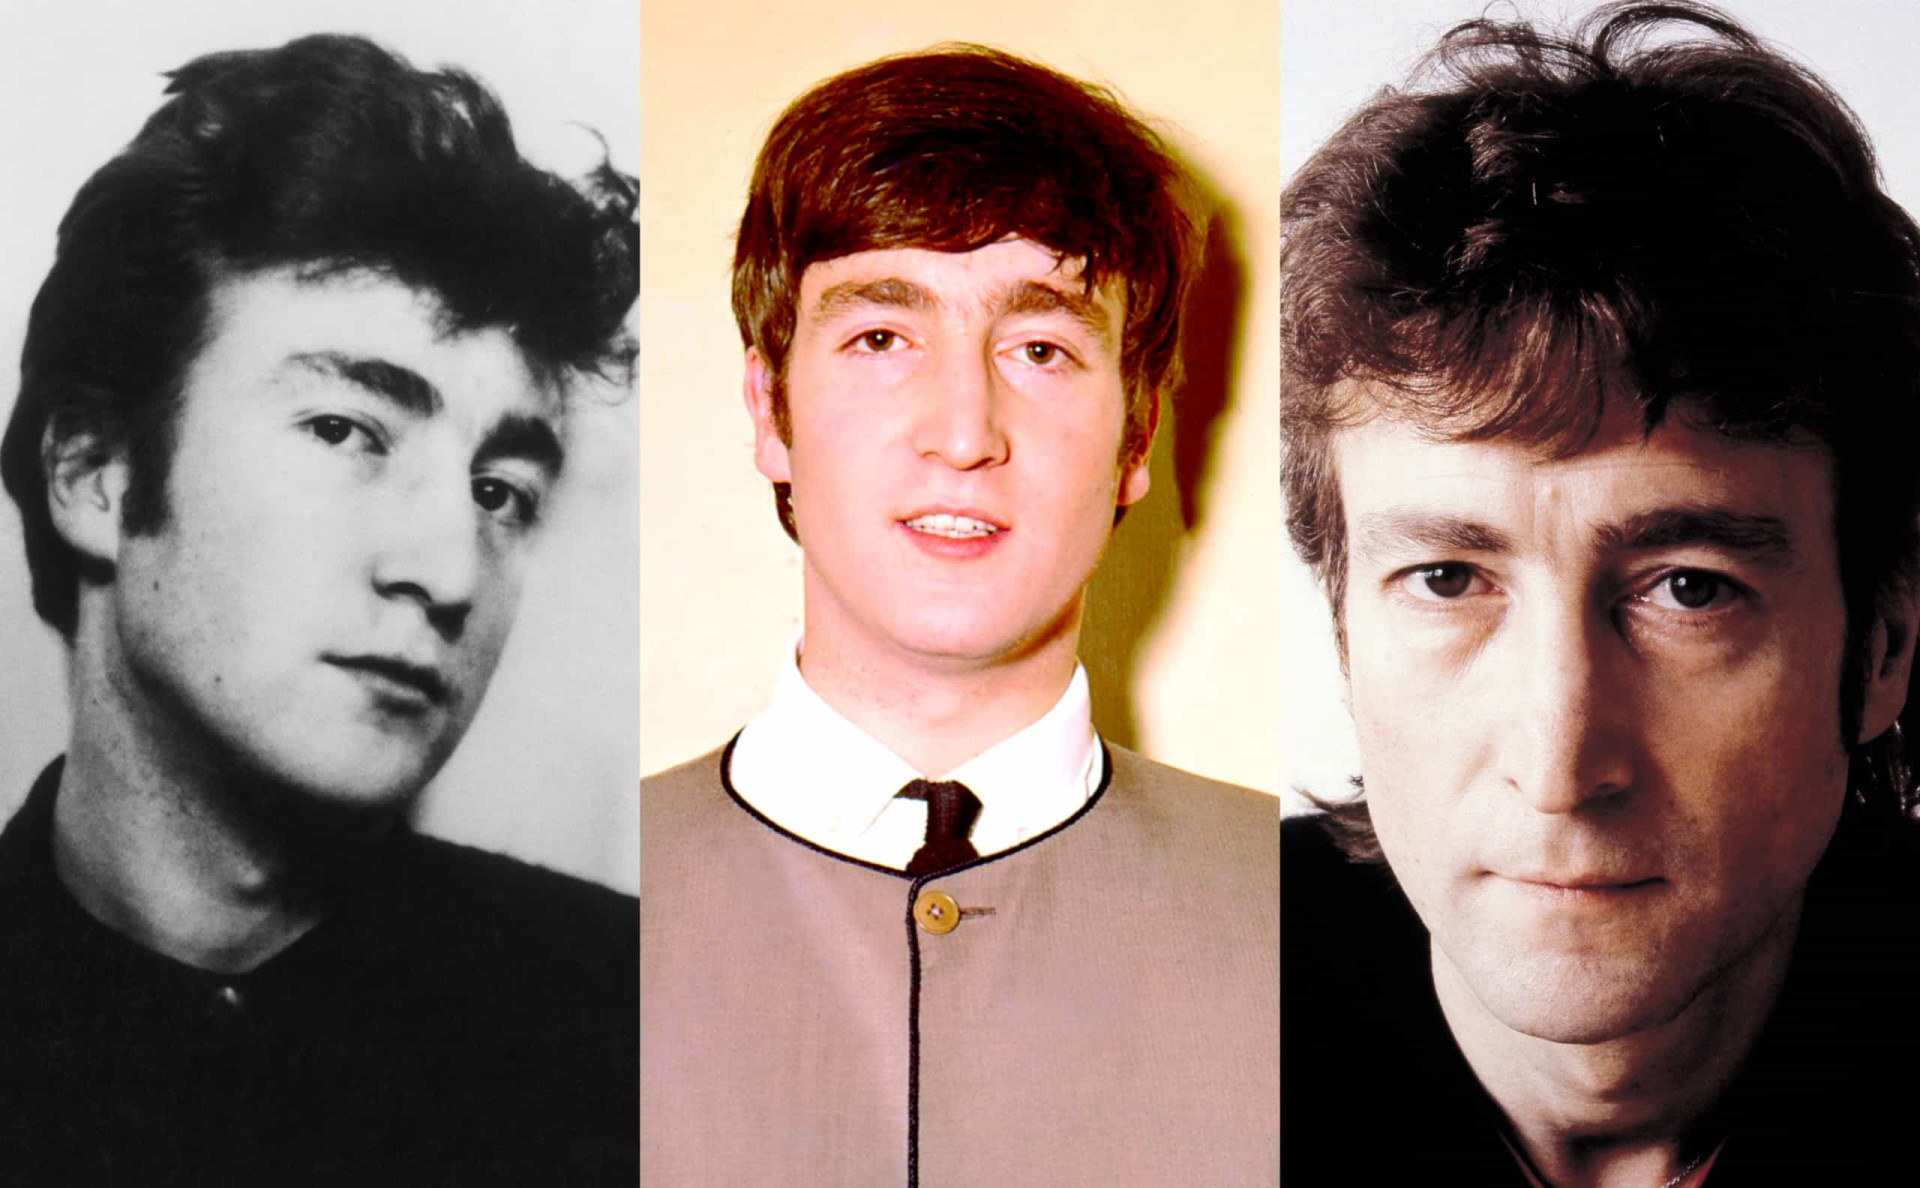 <p>John Lennon nous a quitté le 8 décembre 1980, après avoir été assassiné dans la ville de New York. Sa mort avait laissé le monde entier sous le choc, car il avait été victime d'un geste insensé, alors qu'il chantait toujours, prônant la paix et l'amour. Plus de 40 ans après son décès, <a href="https://www.starsinsider.com/fr/people/287624/les-beatles-ces-anecdotes-qui-vous-avaient-echappe" rel="noopener">le groupe</a> formé par John Lennon à Liverpool est toujours aussi populaire et admiré dans le monde. L'auteur-compositeur-interprète reste présent dans l'esprit d'un grand nombre de fans.</p> <p>Cliquez sur cette galerie et replongez-vous dans la vie et la carrière de l'une des plus grandes stars de sa génération.</p><p>Tu pourrais aussi aimer:<a href="https://www.starsinsider.com/n/96397?utm_source=msn.com&utm_medium=display&utm_campaign=referral_description&utm_content=453819v3fr-ca"> Quels sont les principaux paradis fiscaux du monde ?</a></p>